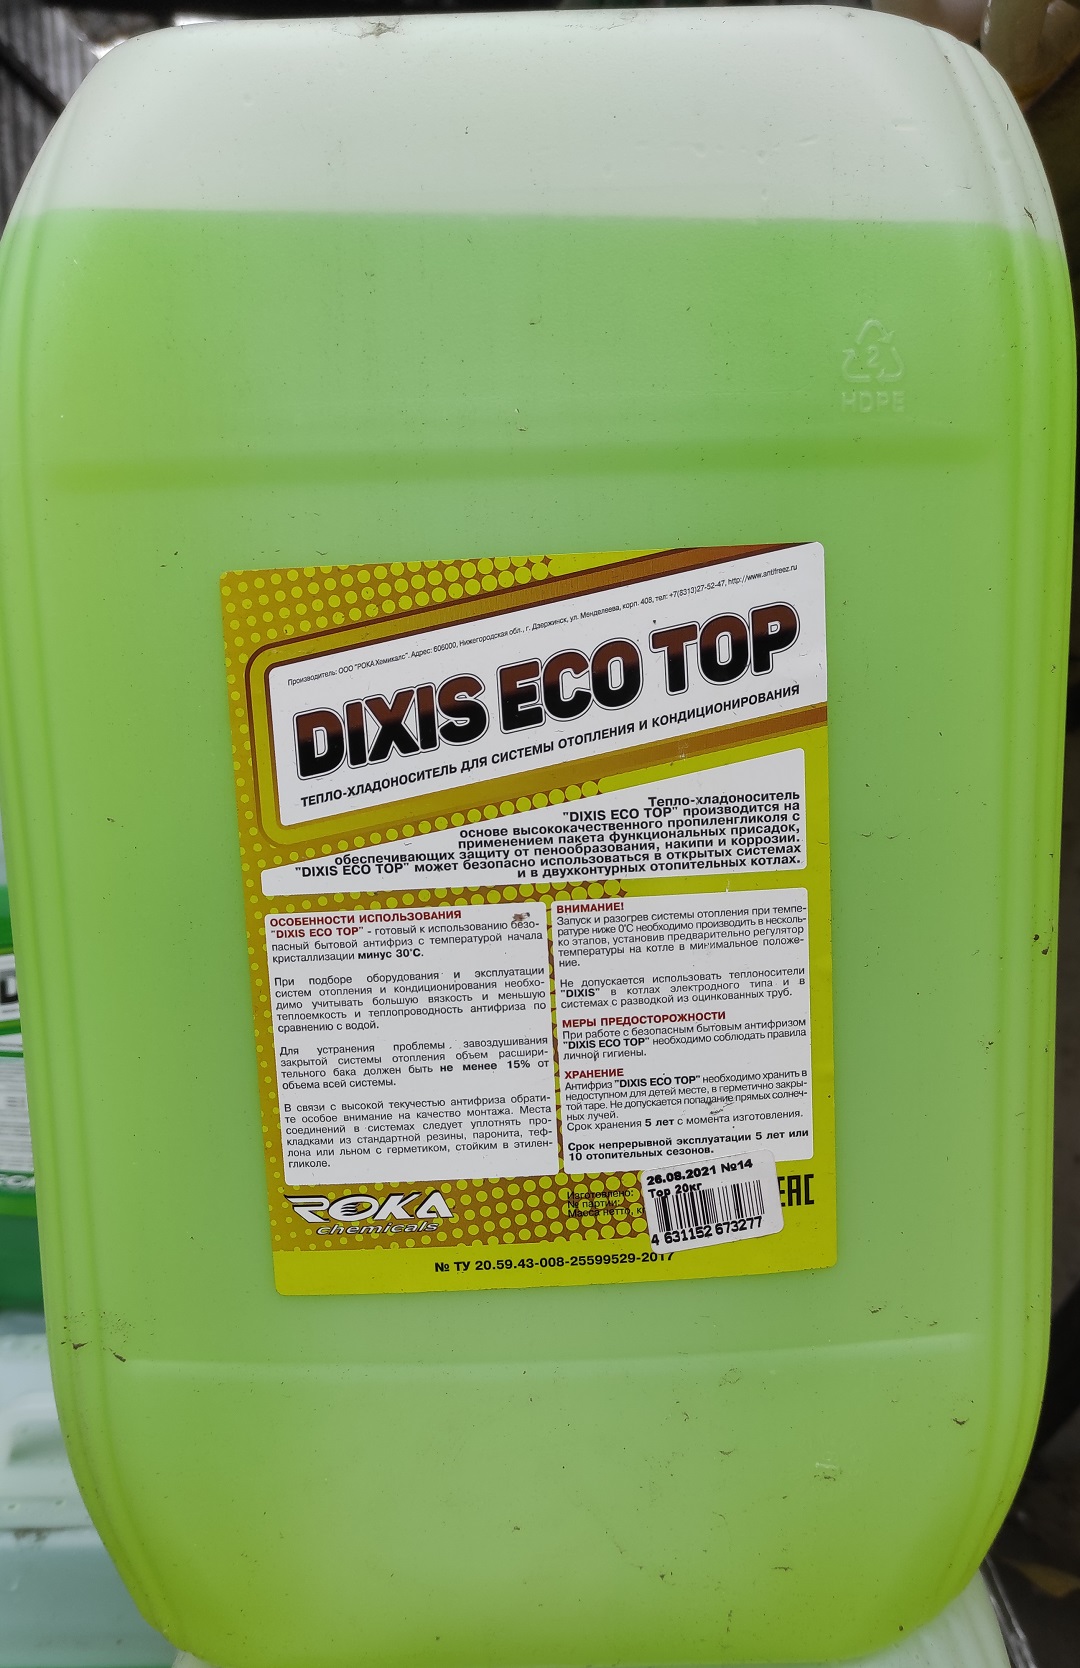 Бытовой антифриз DIXIS ECO TOP 10 кг на основе пропиленгликоля